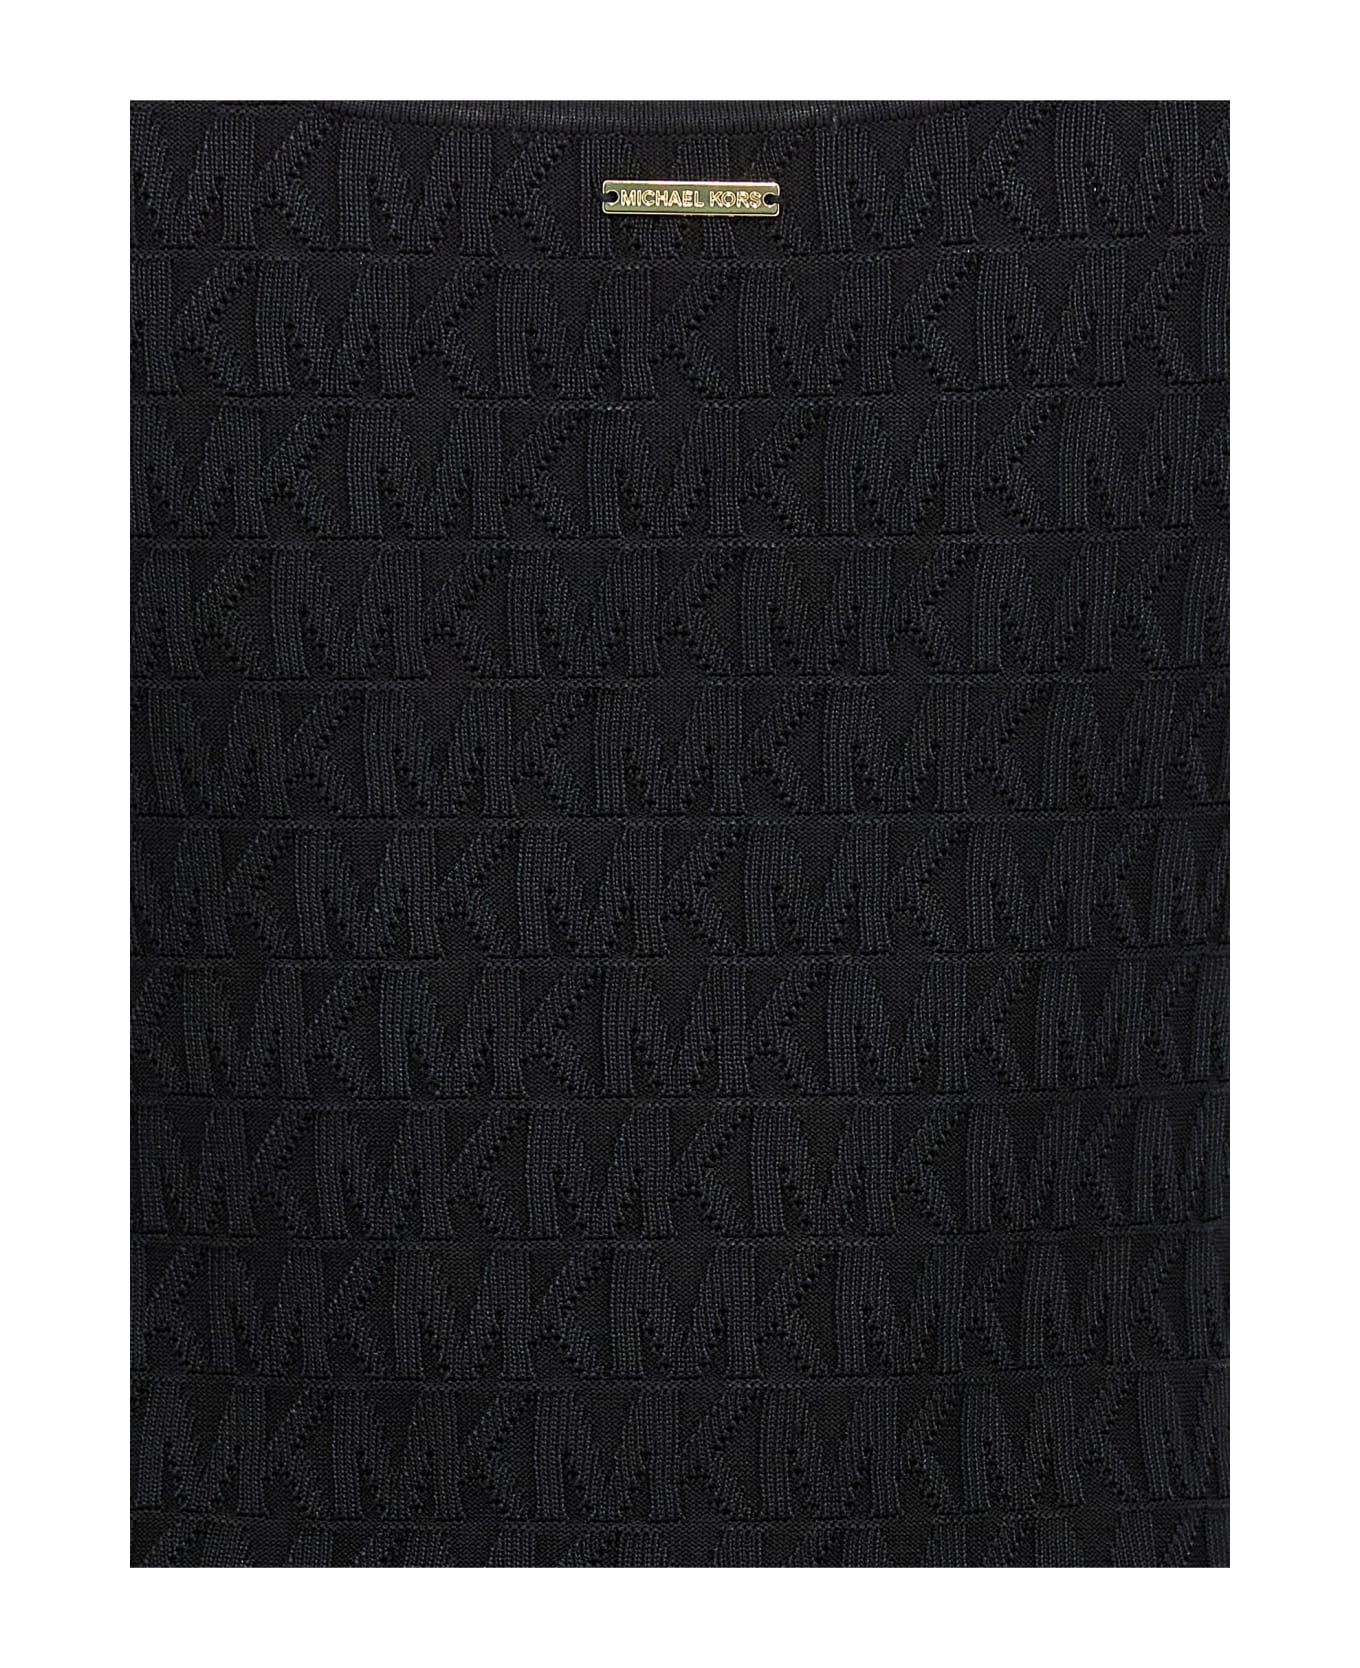 Michael Kors Jacquard Logo Dress - Black